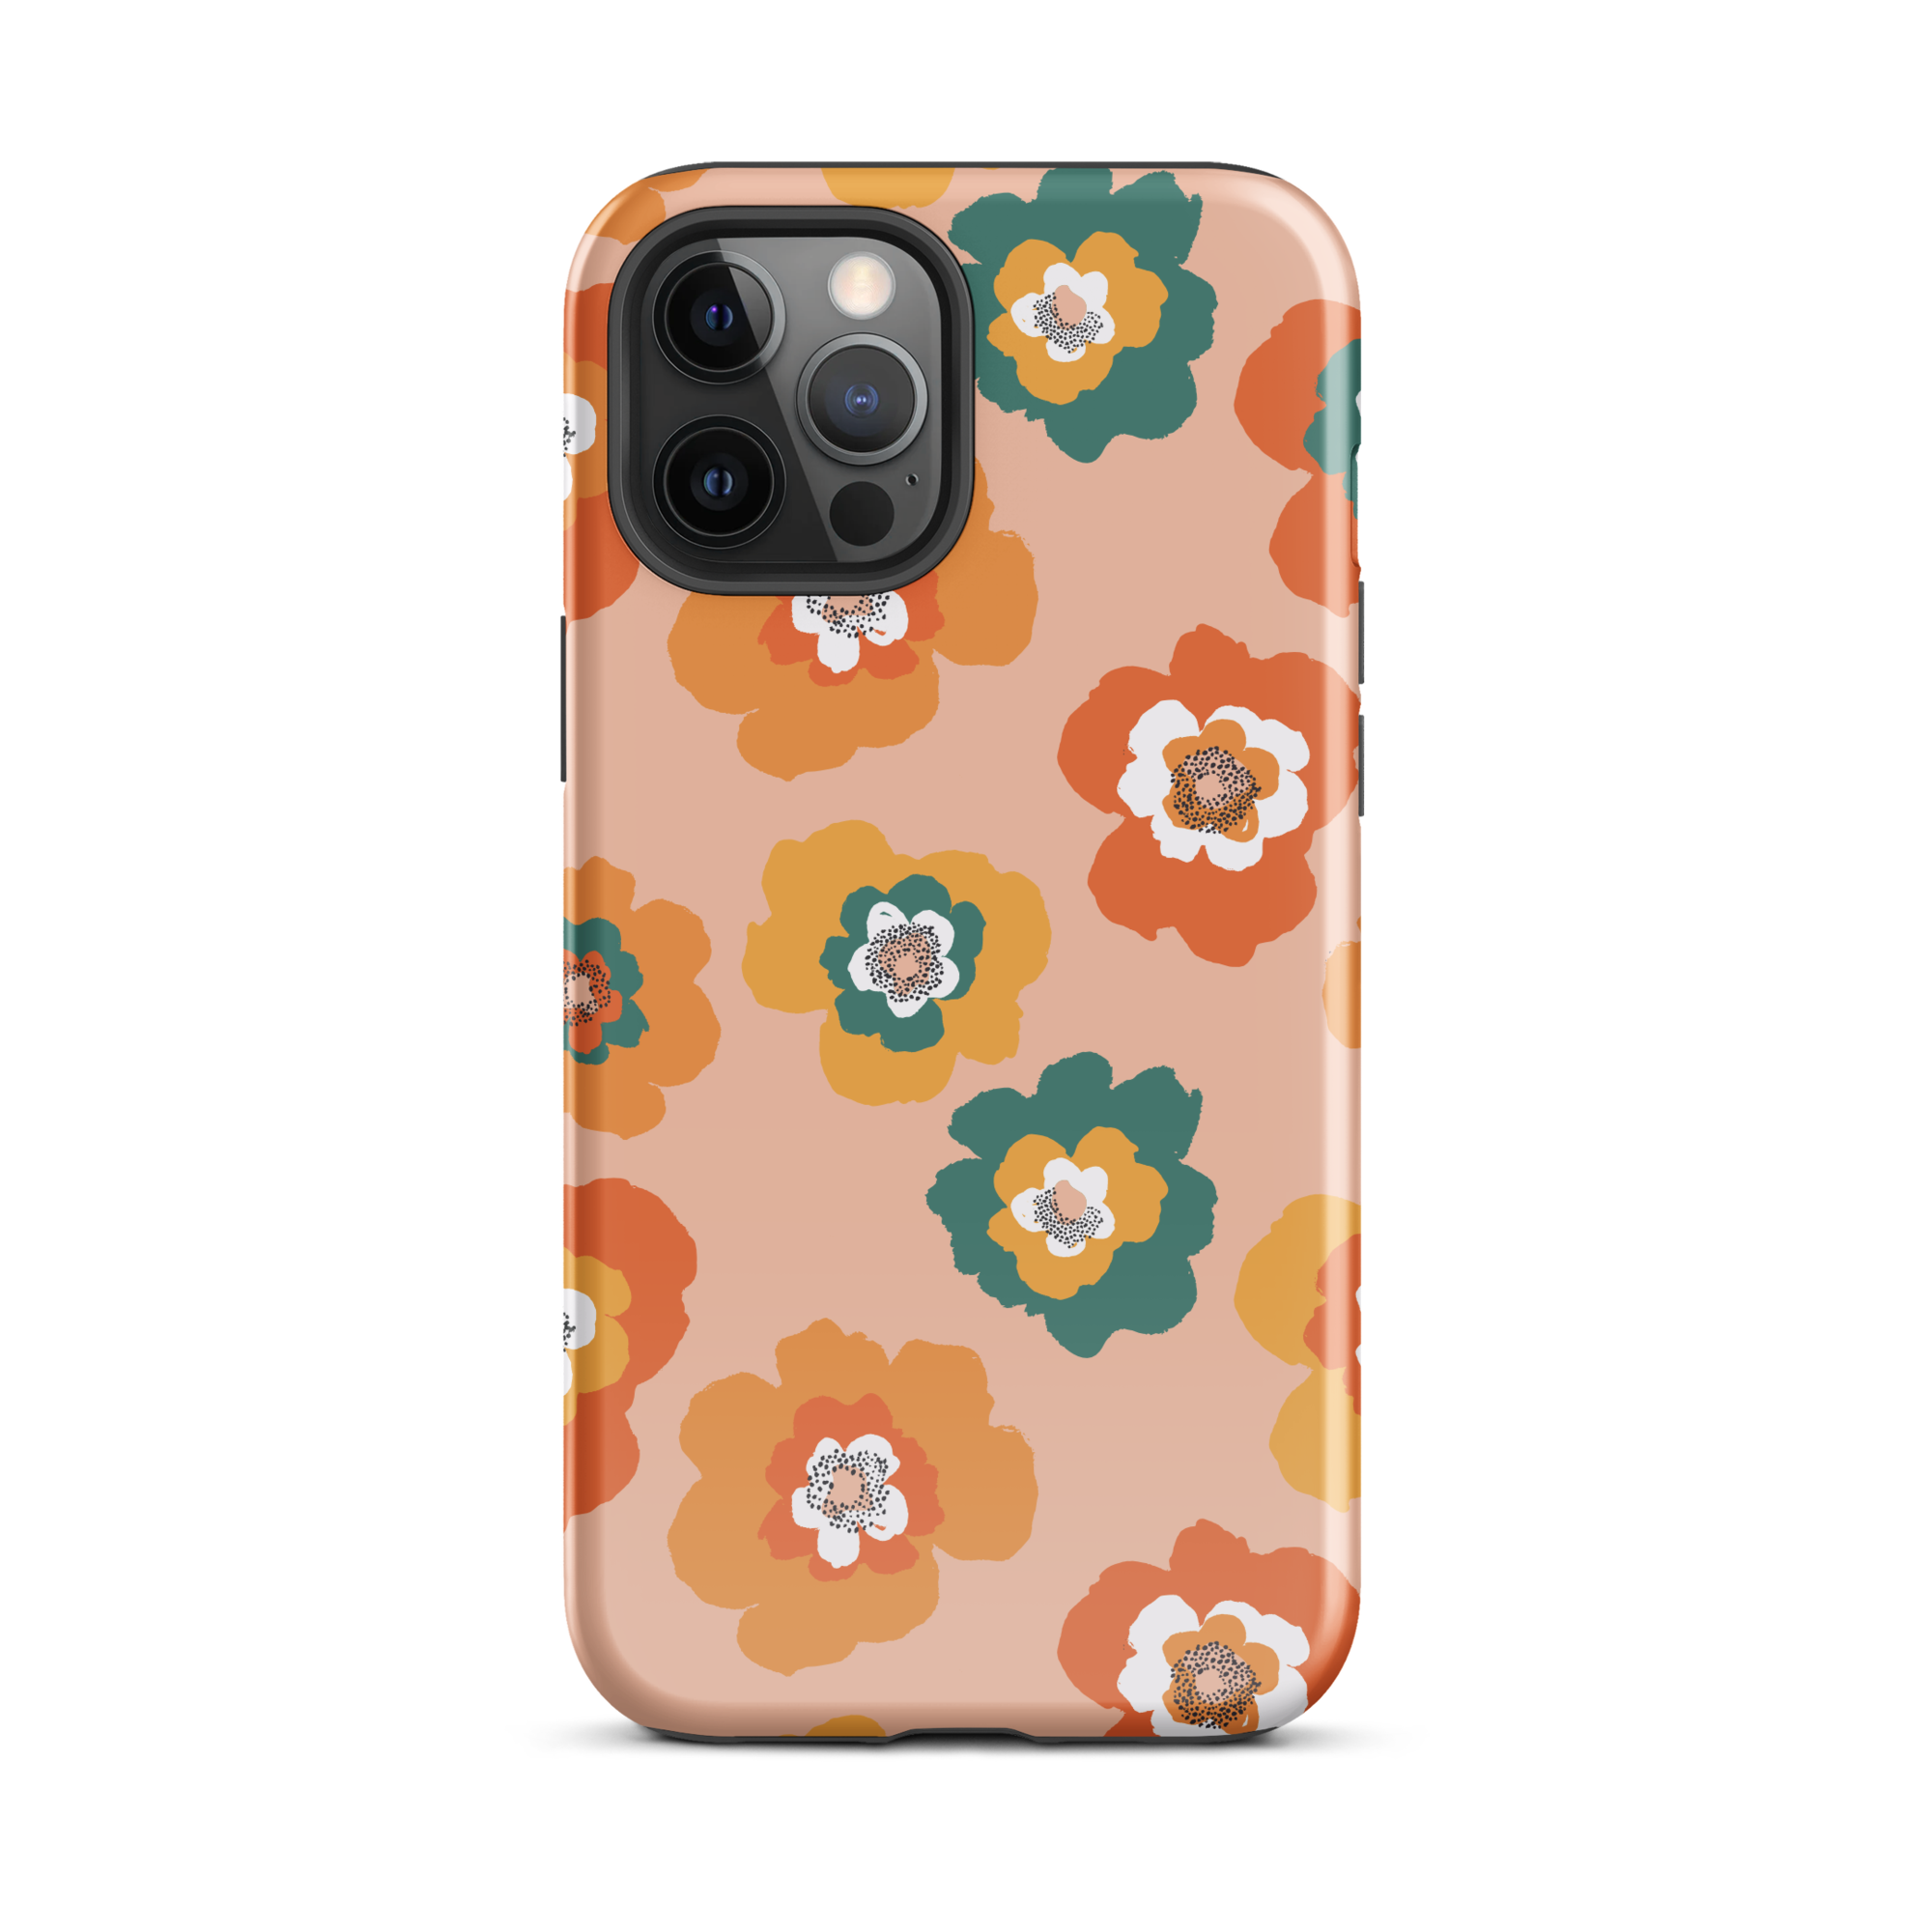 Retro Blossom iPhone 12 Pro Max Case